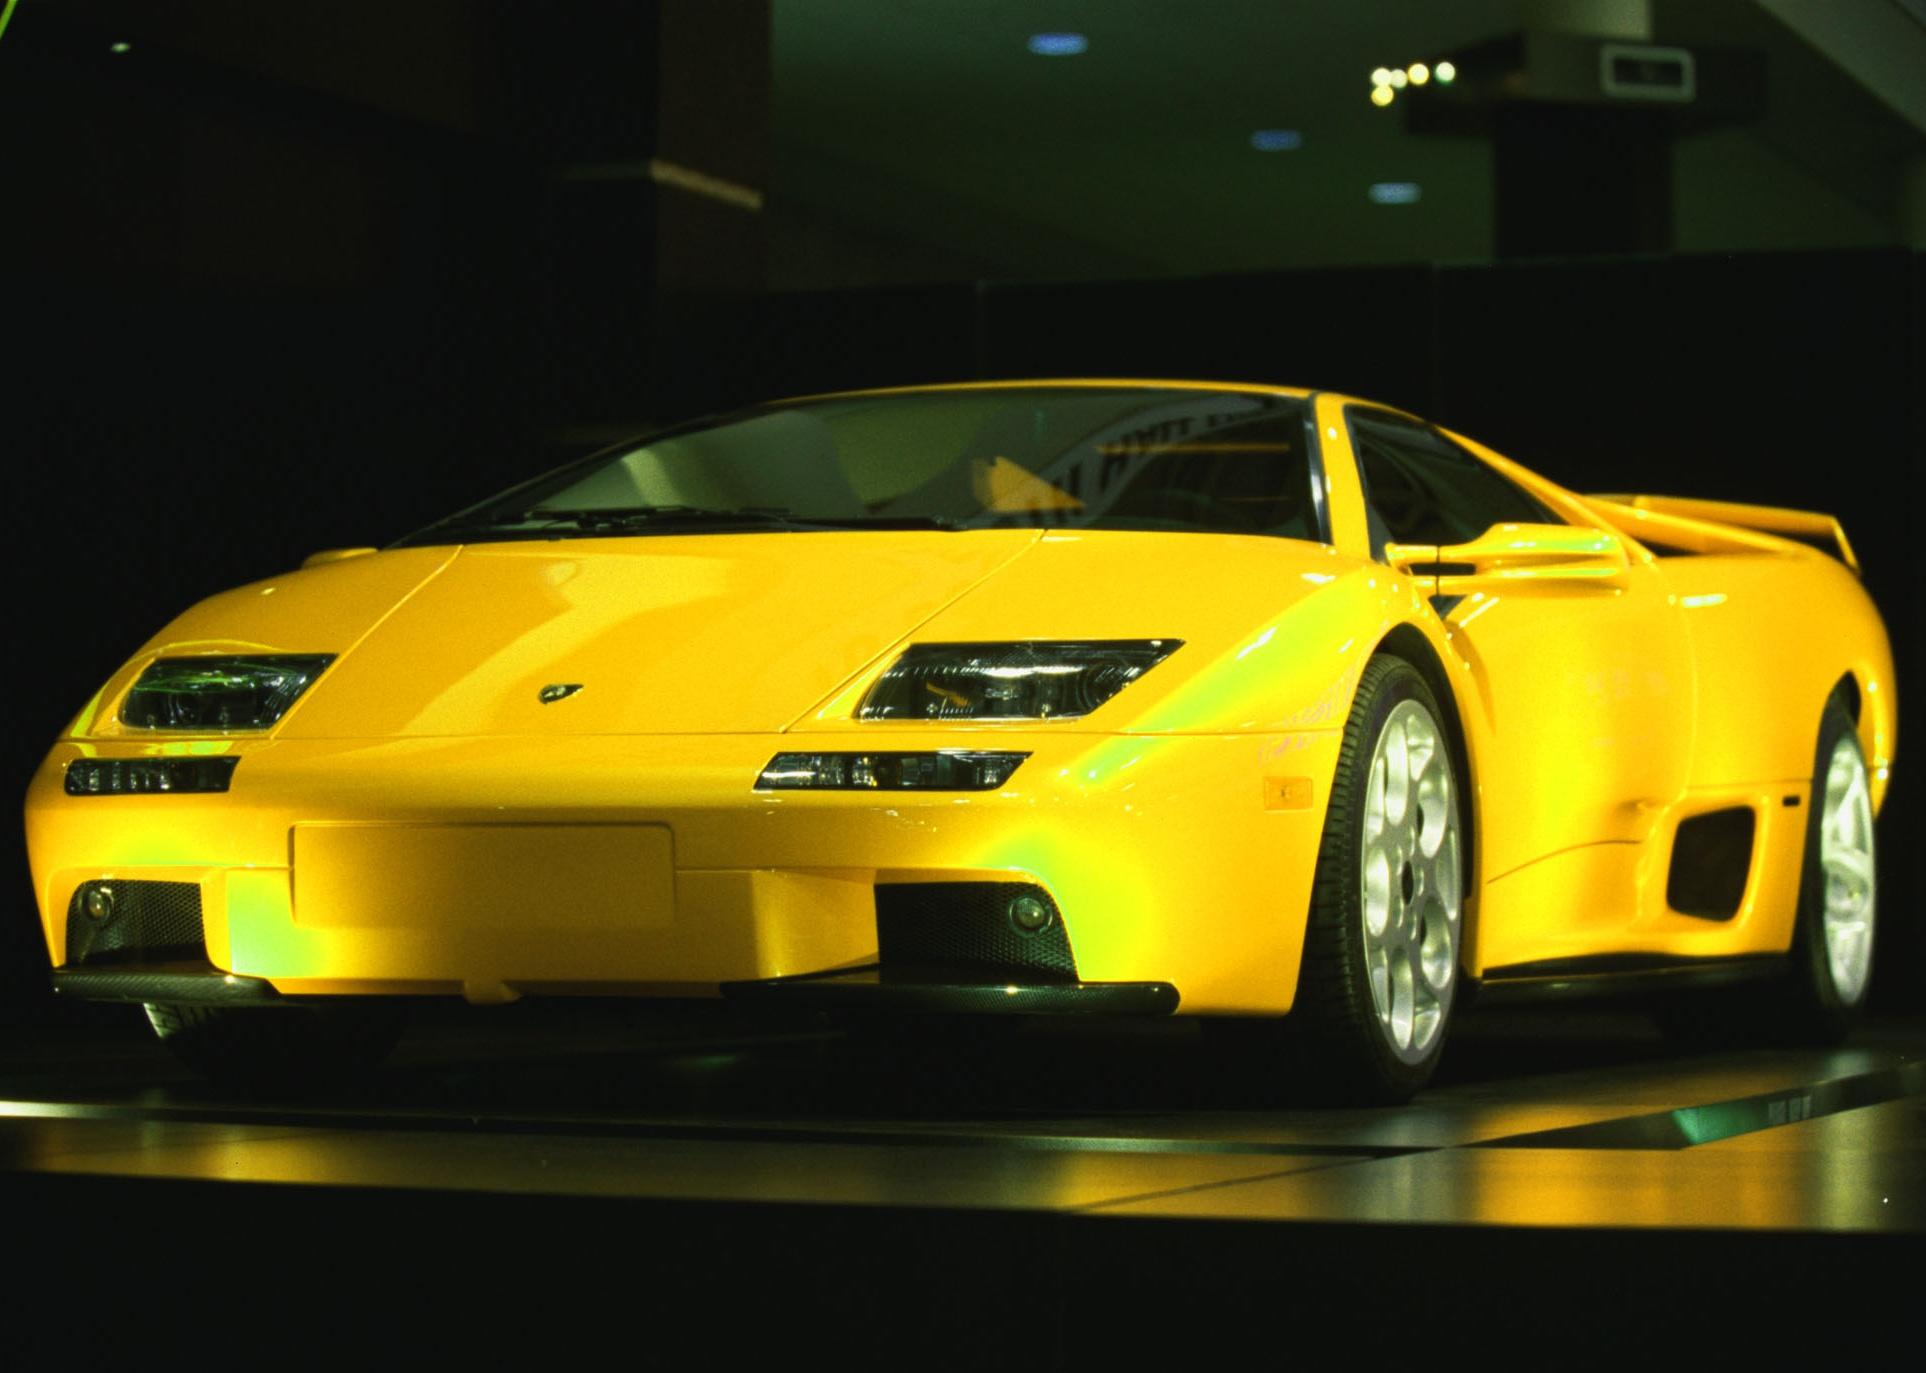 A yellow Lamborghini Diablo on display. 